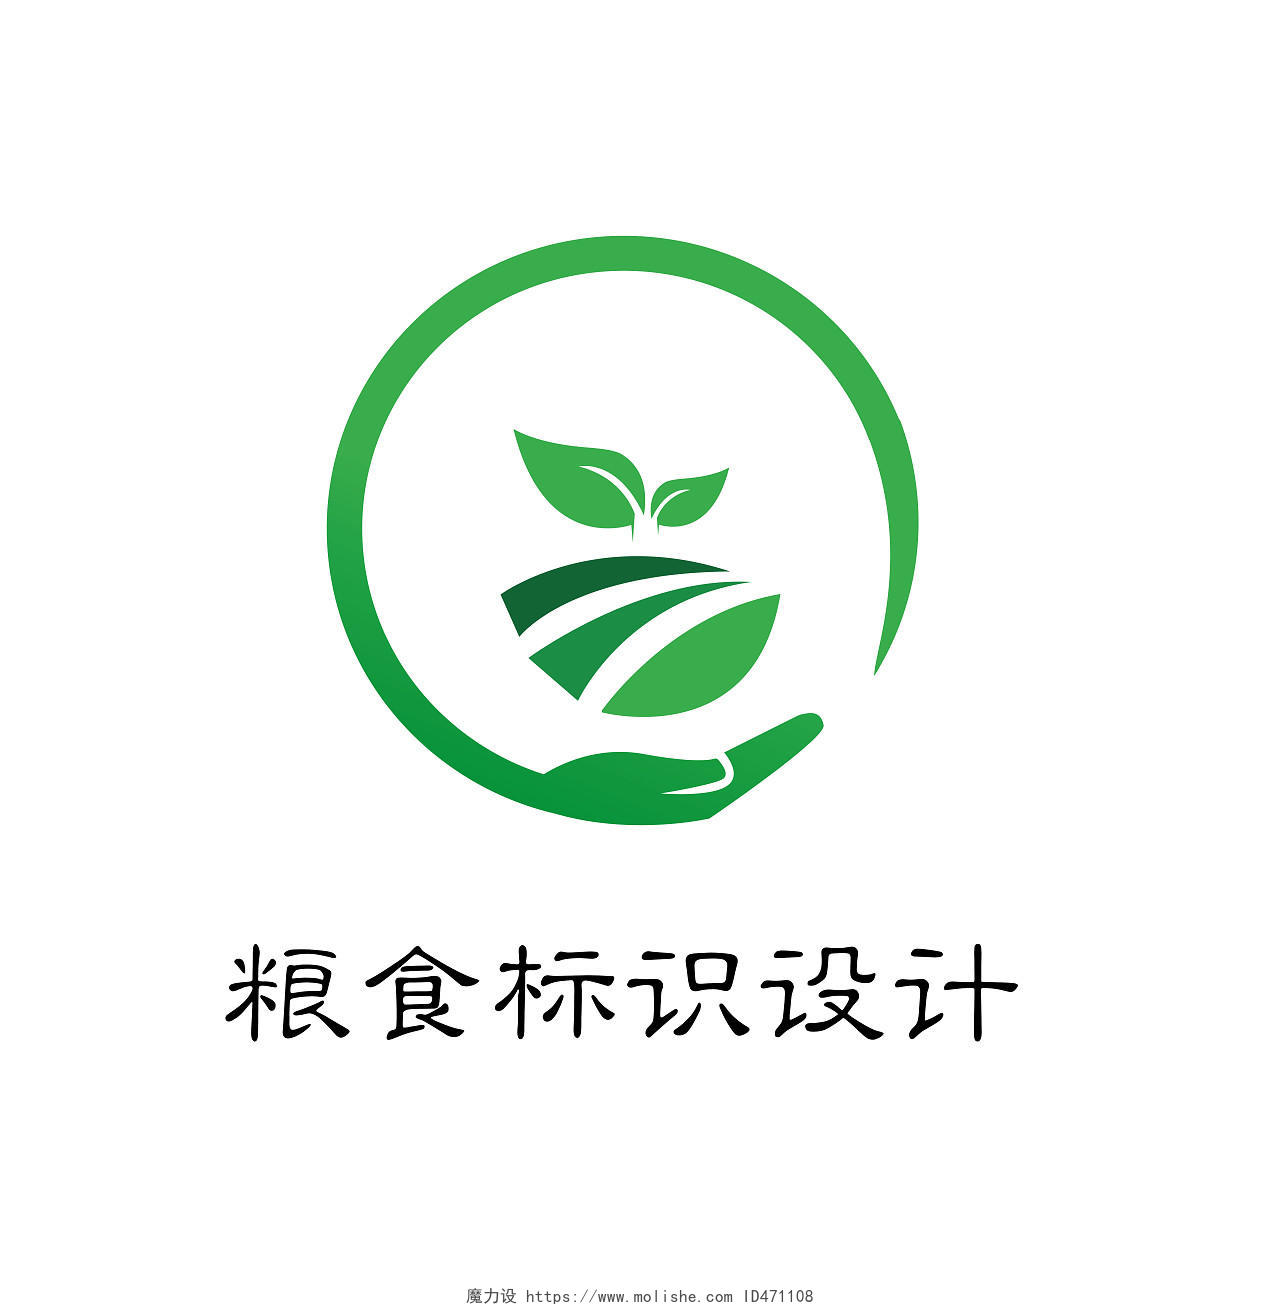 环保高端绿色粮食标识设计LOGO粮食logo